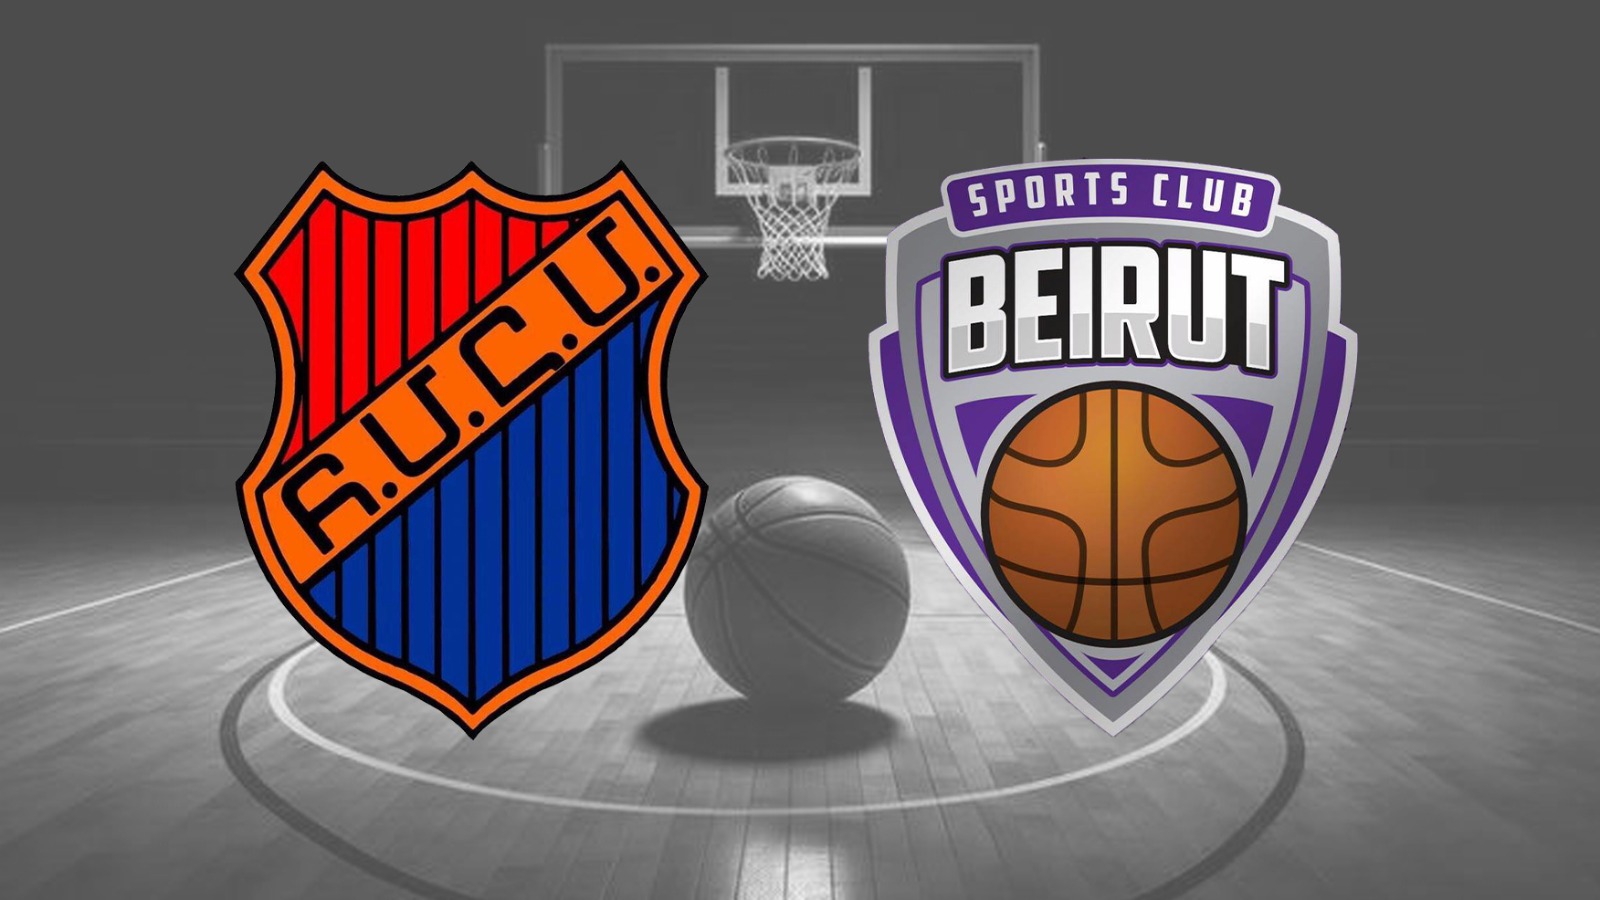  تطور كبير على خط كرة السلة: إلغاء مباراة بيروت - الهومنتمن وفوز الأخير  بالمركز الثالث